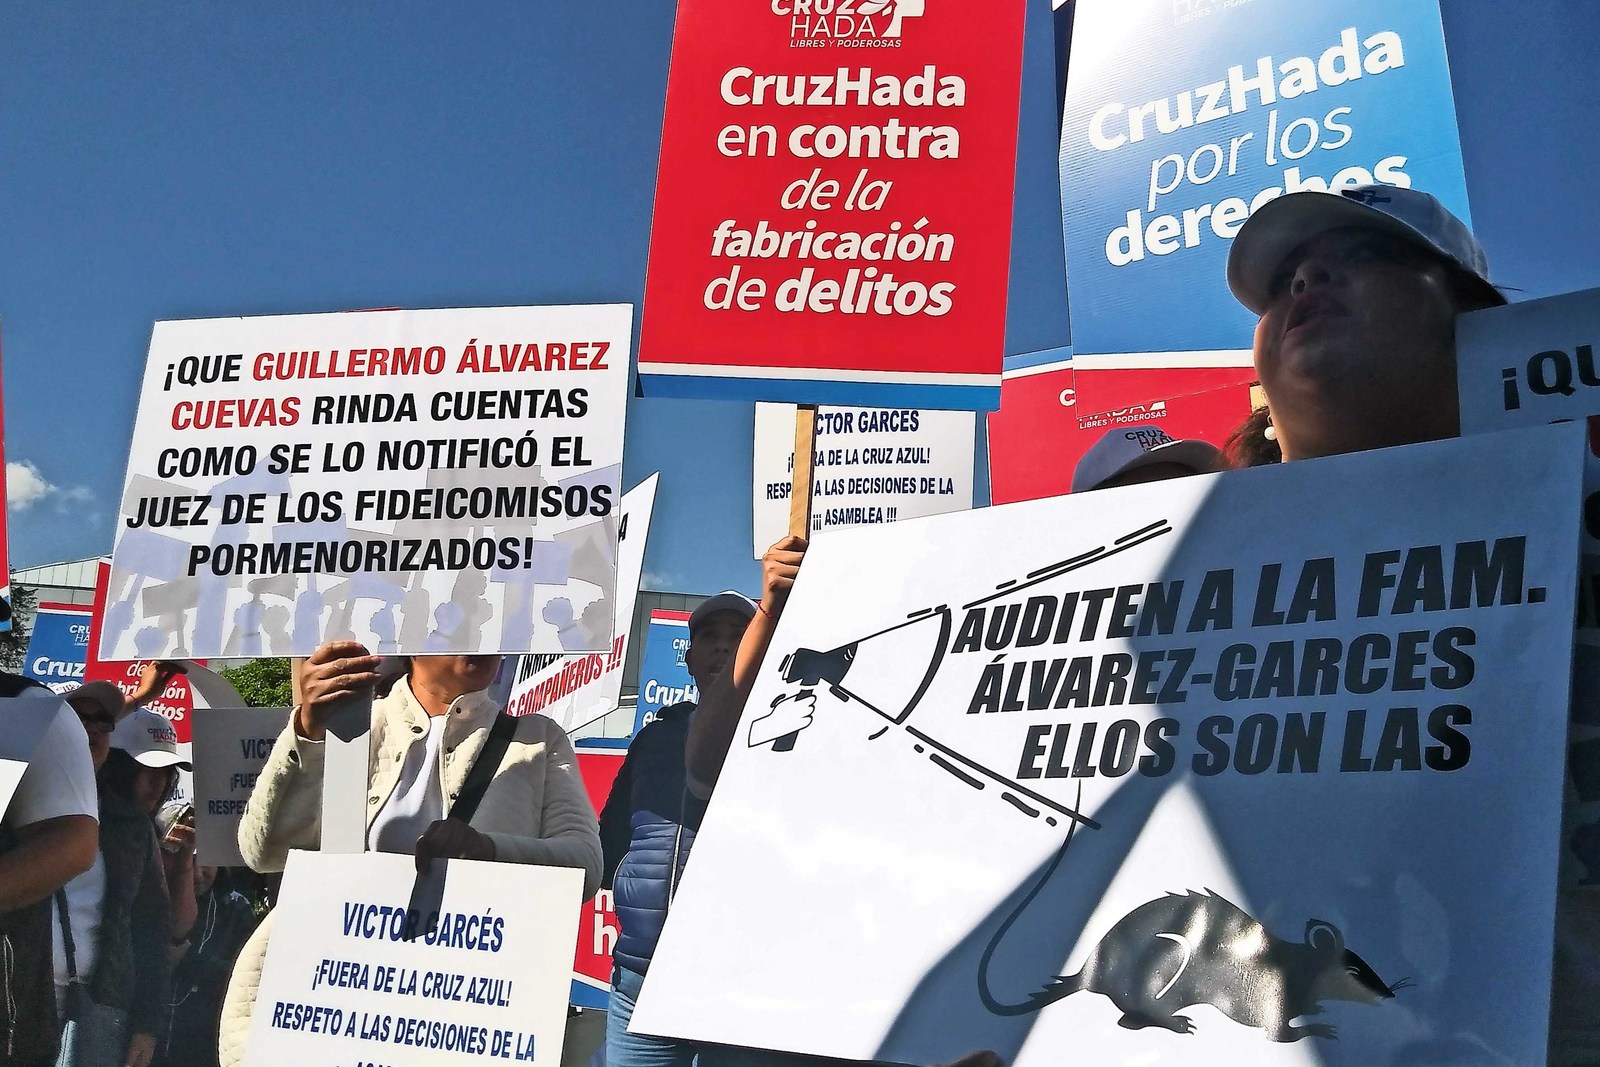 Miembros del movimiento Cruz Hada realizaron una marcha para exigir que las investigaciones de la Cofece se hagan con profundidad en Cruz Azul y la administración que encabeza Guillermo Álvarez Cuevas.